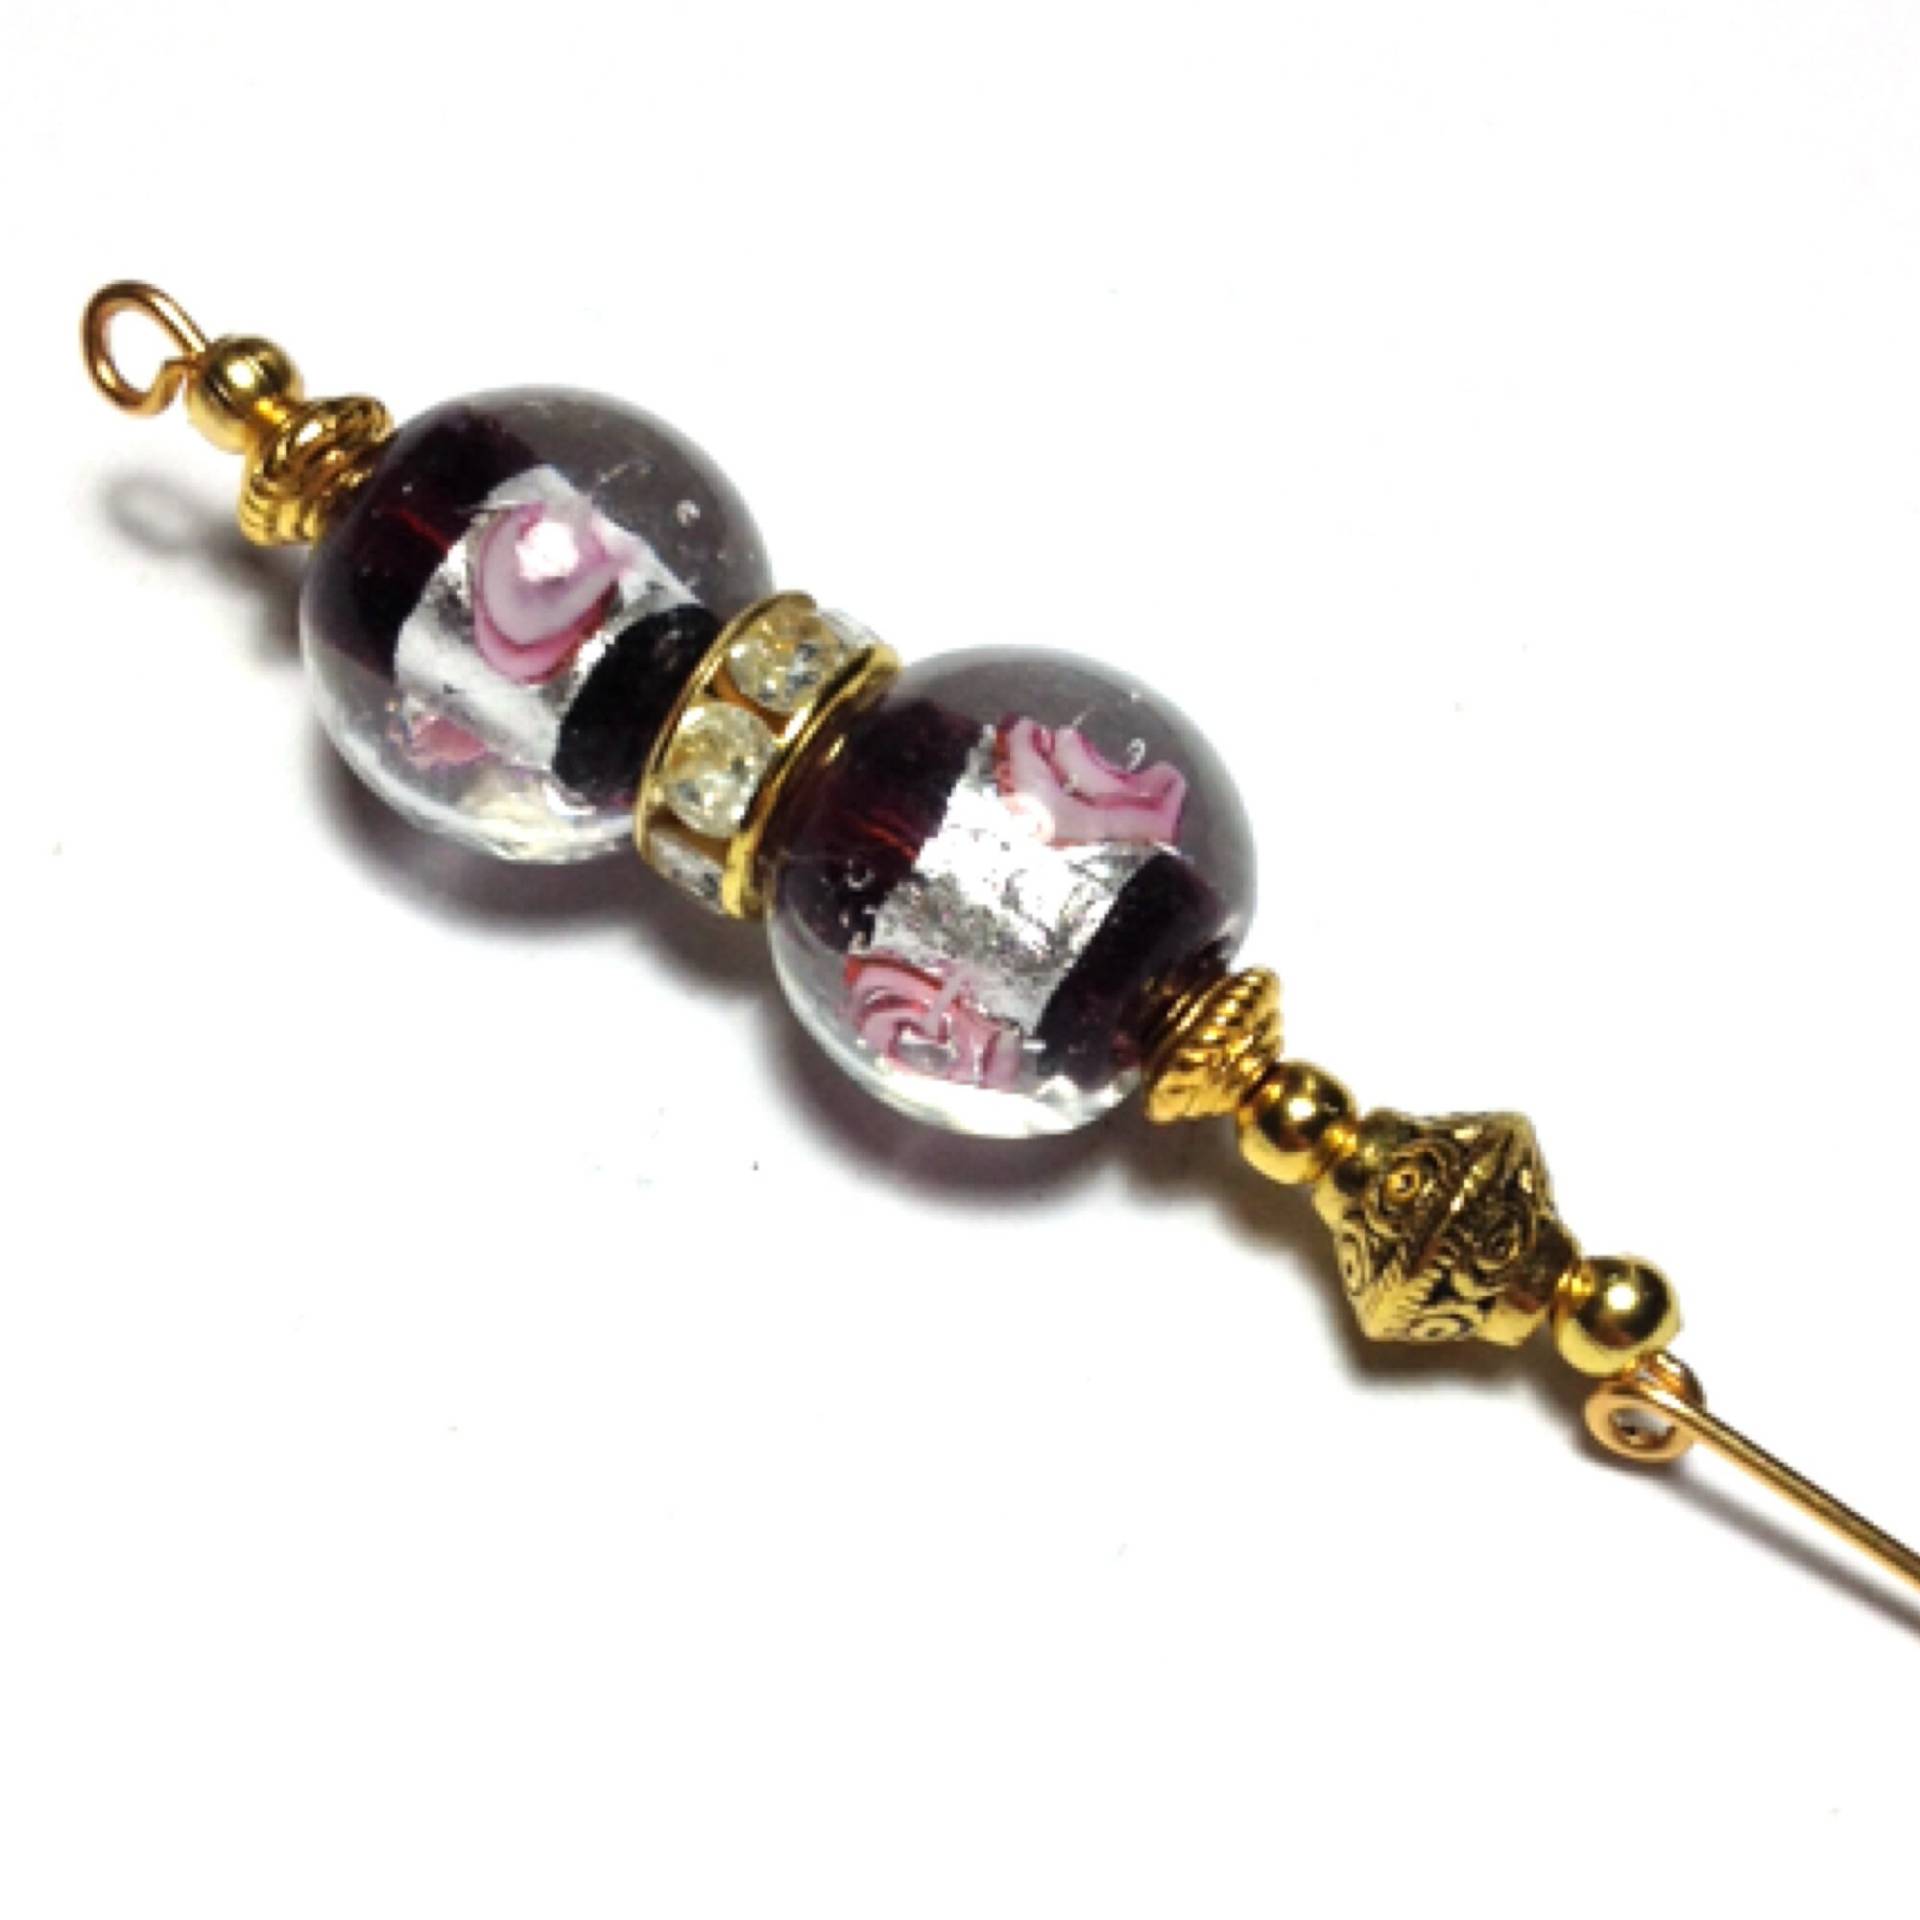 5" Gold Schwarz & Rosa Glas Perlen Hut Pin Vintage Style - Mit Endschutz von CraftysodJewellery1